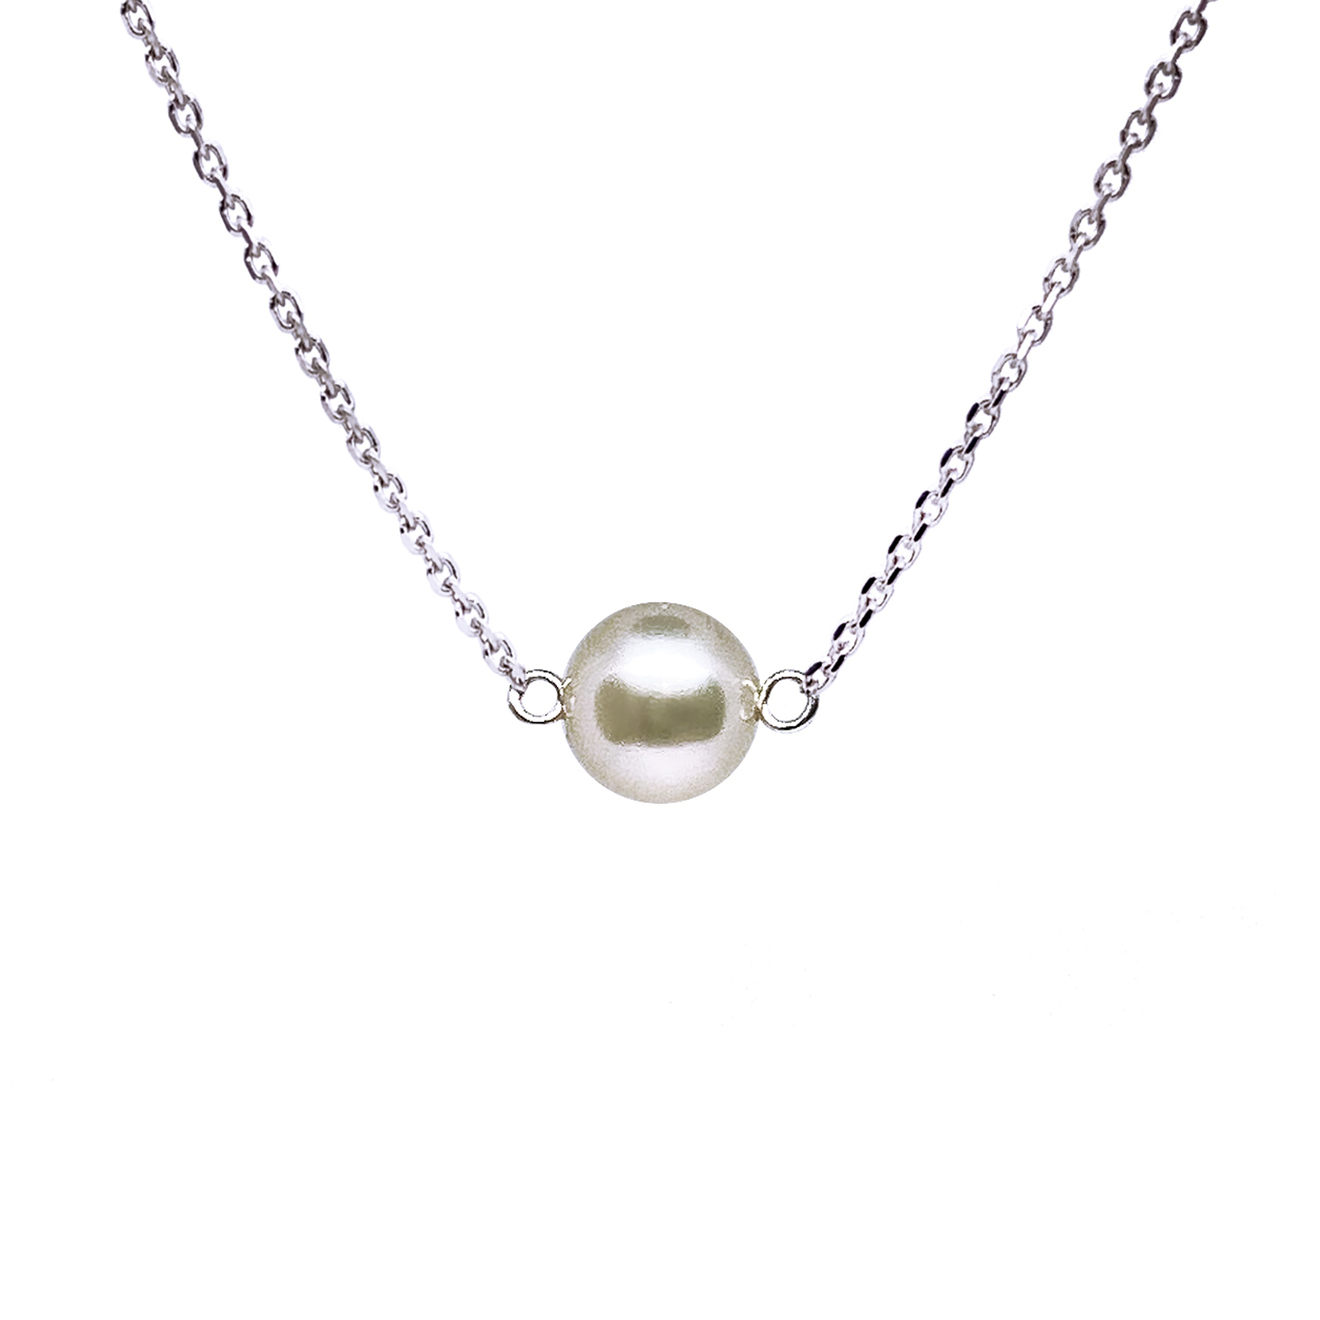 Prosto Jewelry Подвеска с жемчужным шариком подвеска серебряная prosto jewelry цирк 1 шт